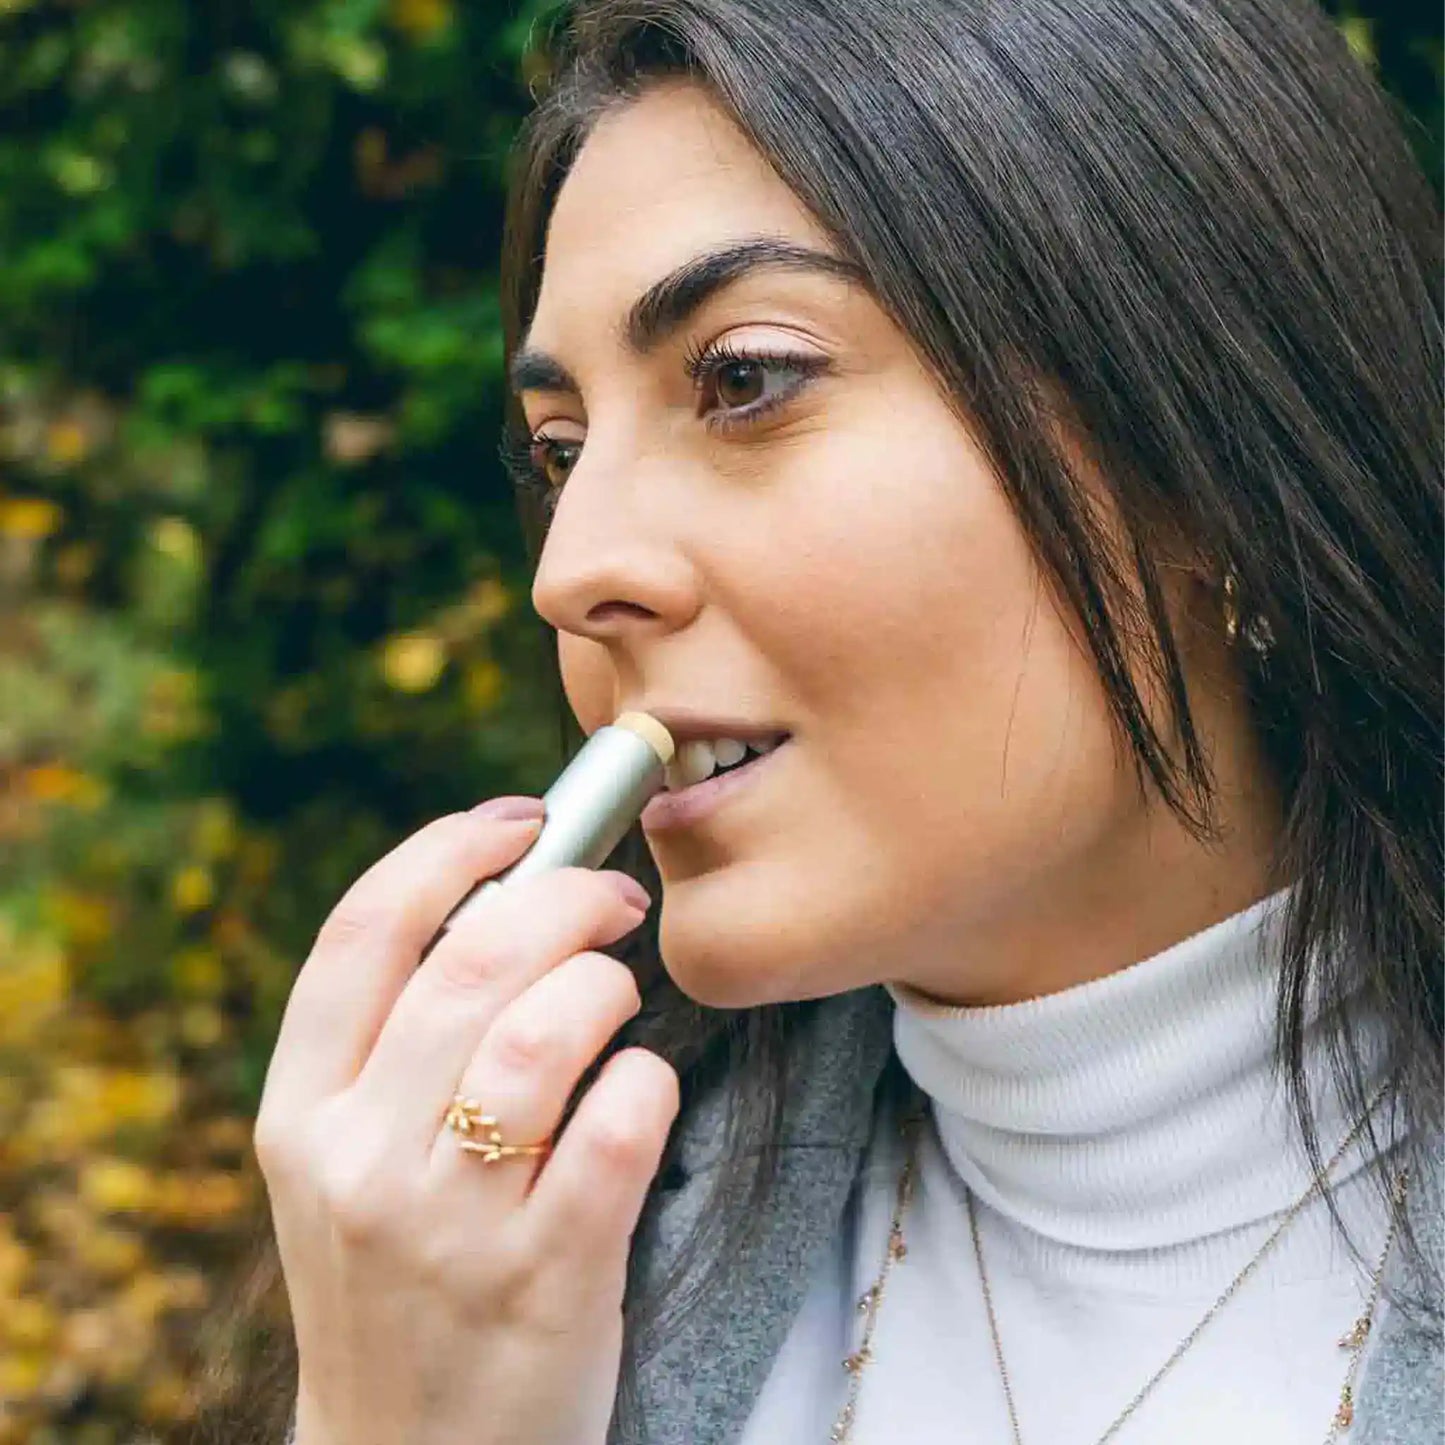 A woman applies CBD lip balm to her lips.